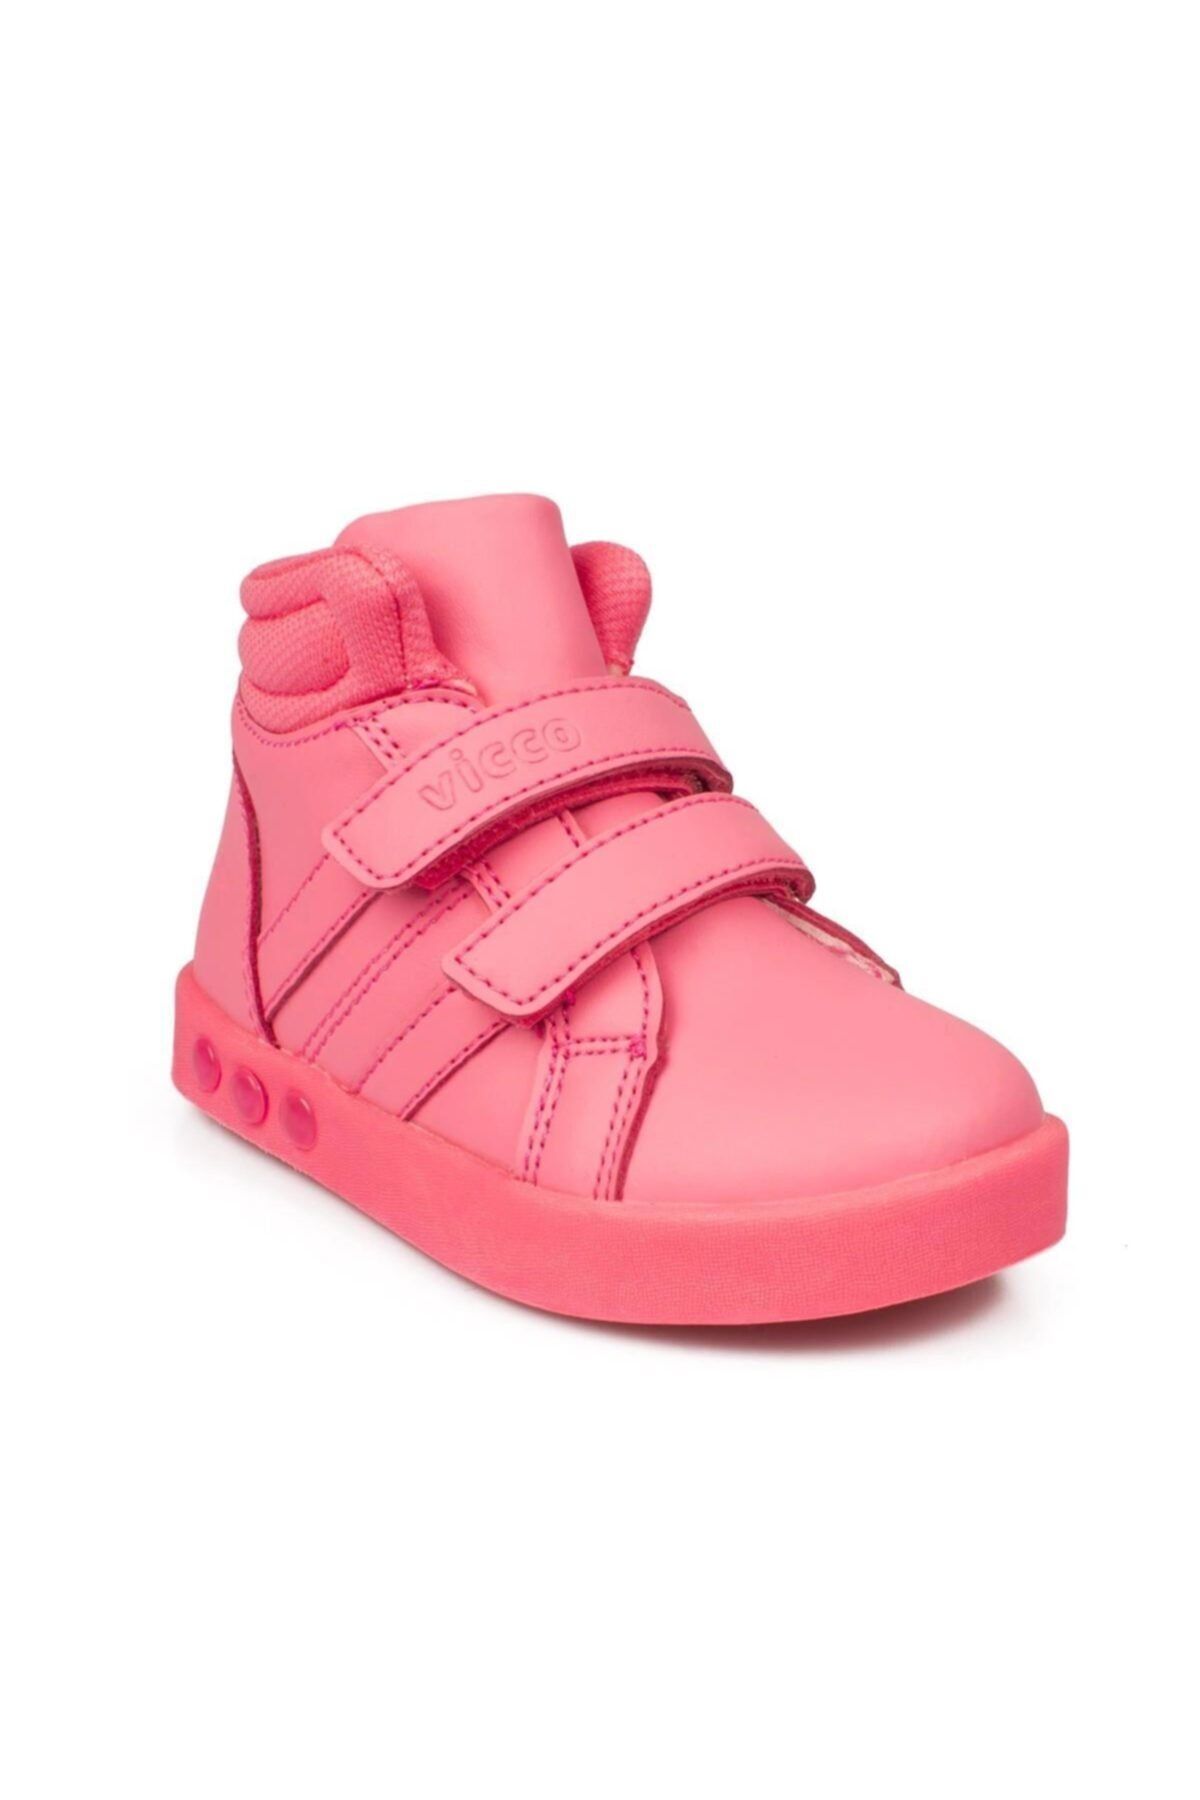 Vicco 313.b19k.104 Pembe Renk Kız Çocuk Işıklı Sneaker Spor Ayakkabı